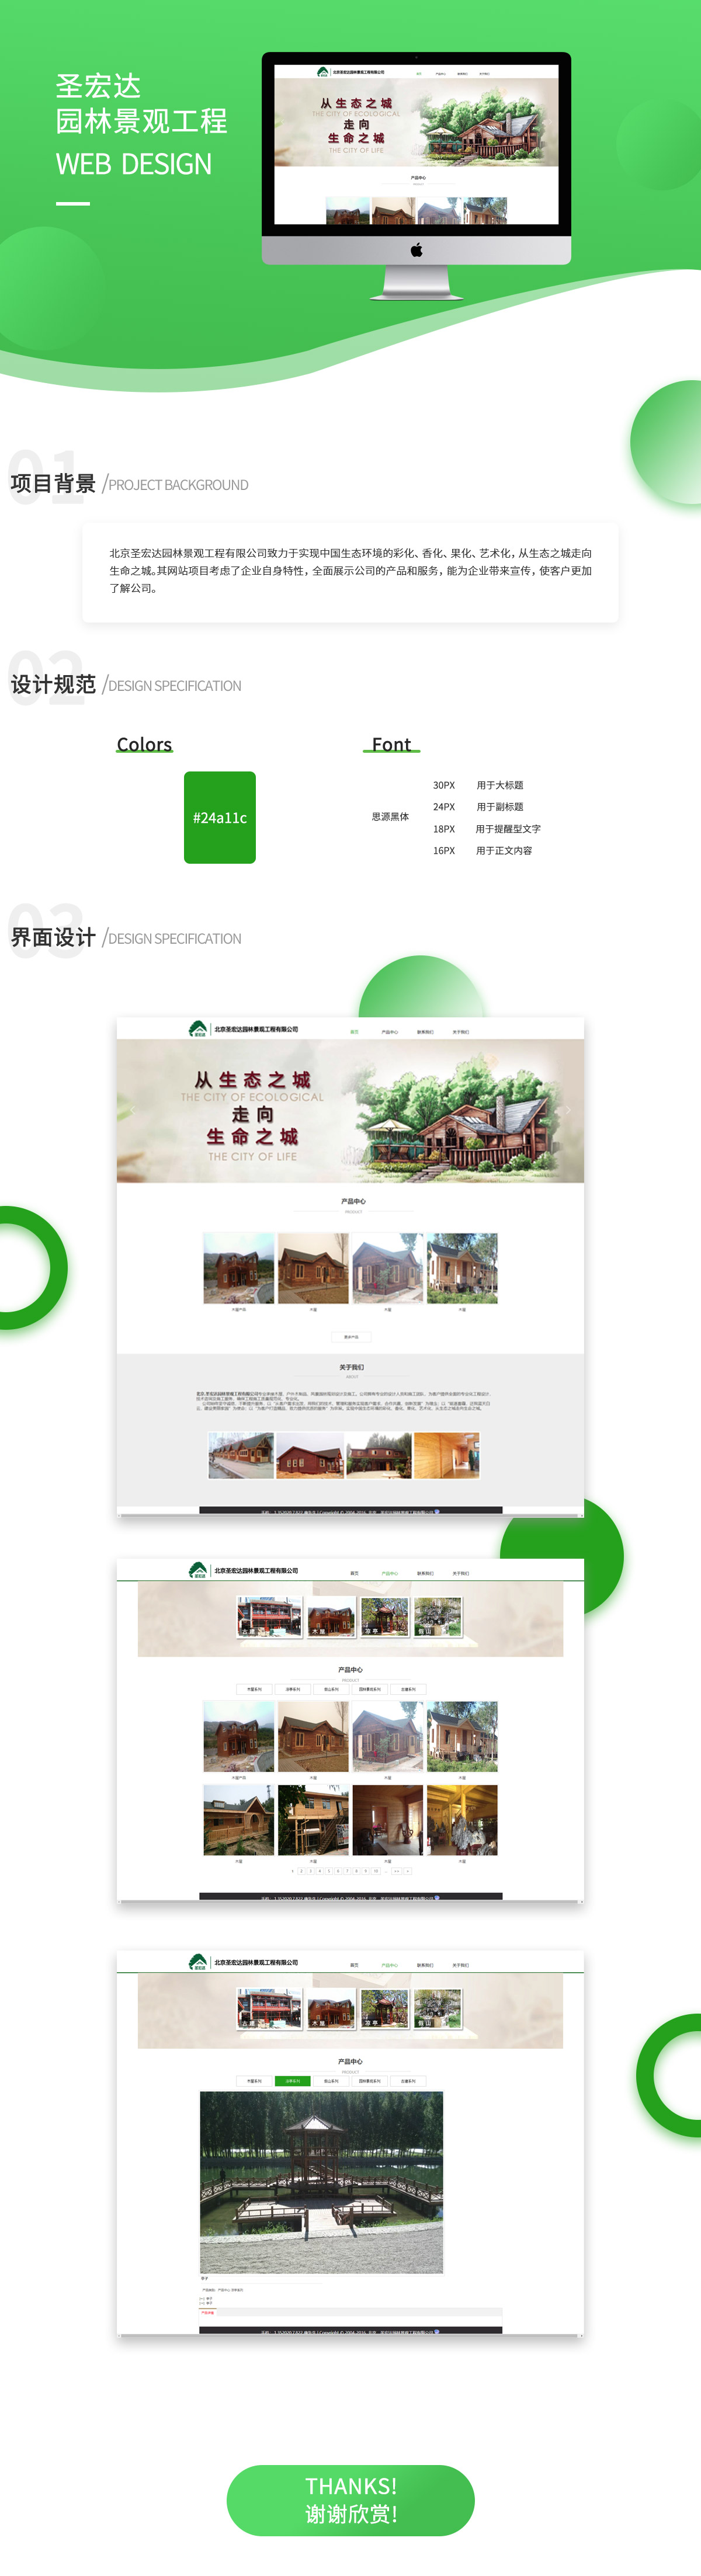 北京圣宏达园林景观工程有限公司网站